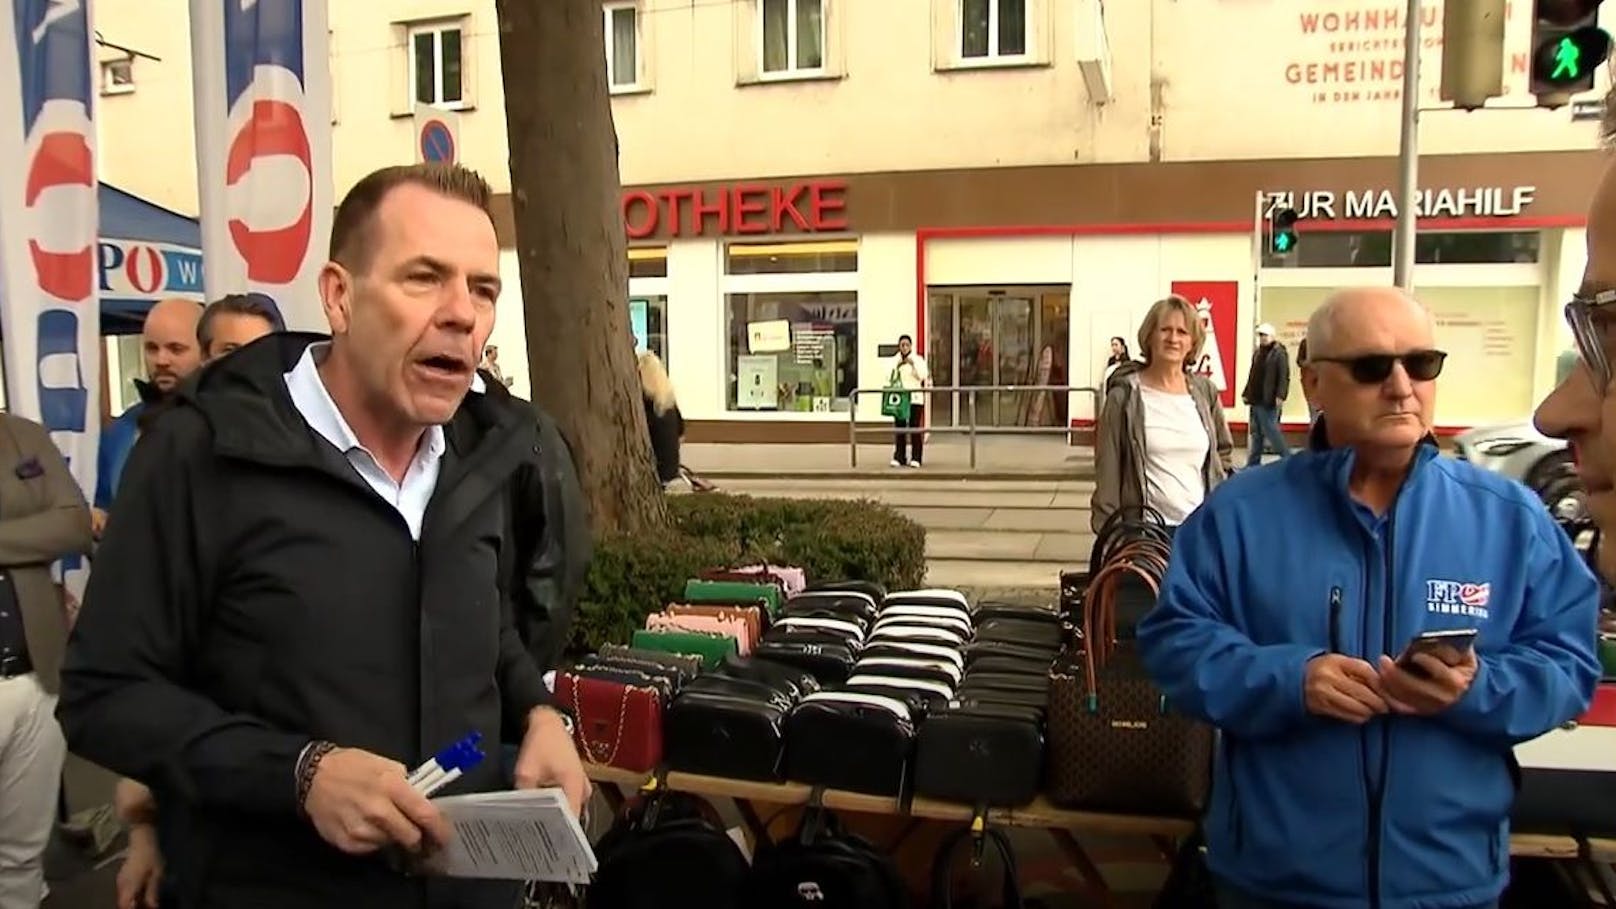 FPÖ tobt über Interview – jetzt zeigt ORF ganze Szene